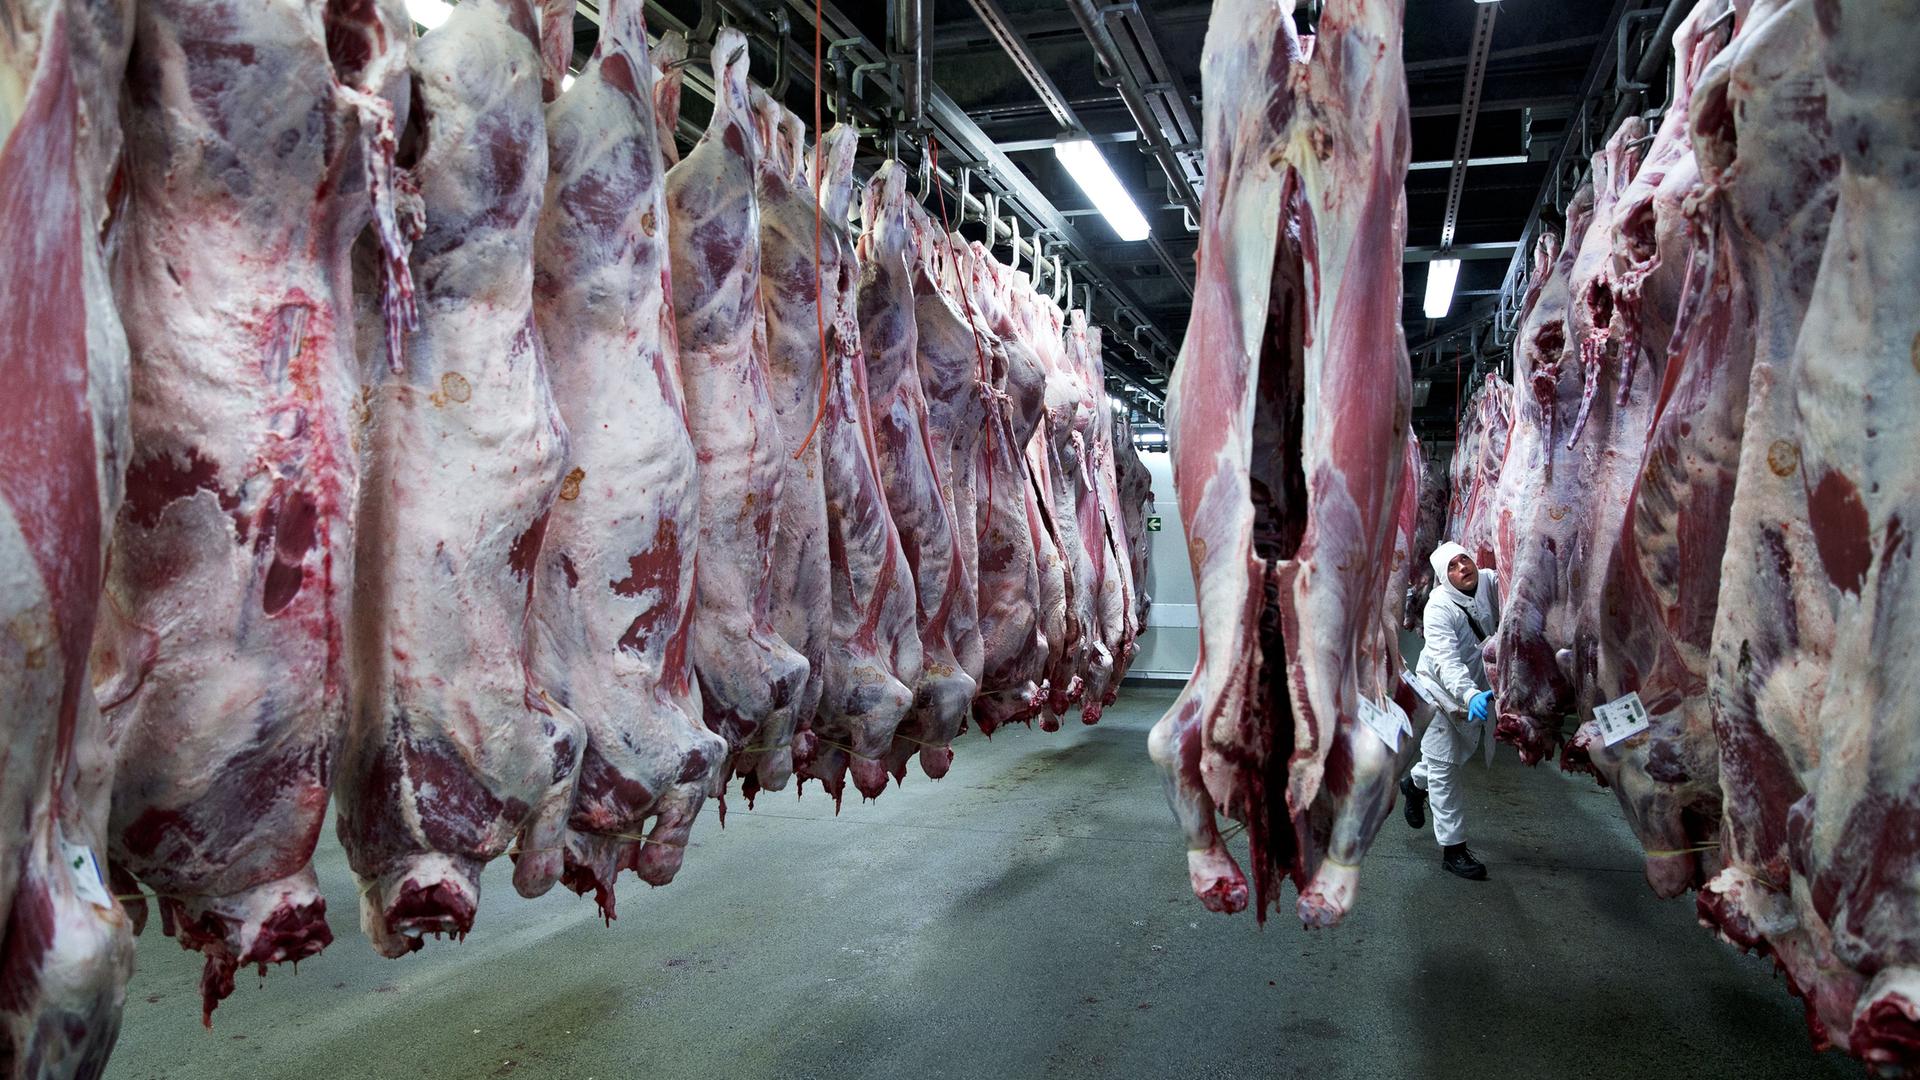 Blick in einen industriellen Schlachthof im niederländischen Putten. Zahlreiche ausgenommene Schweinekörper hängen an Haken von der Decke. Dazwischen ist ein Mann bei der Arbeit zu sehen.